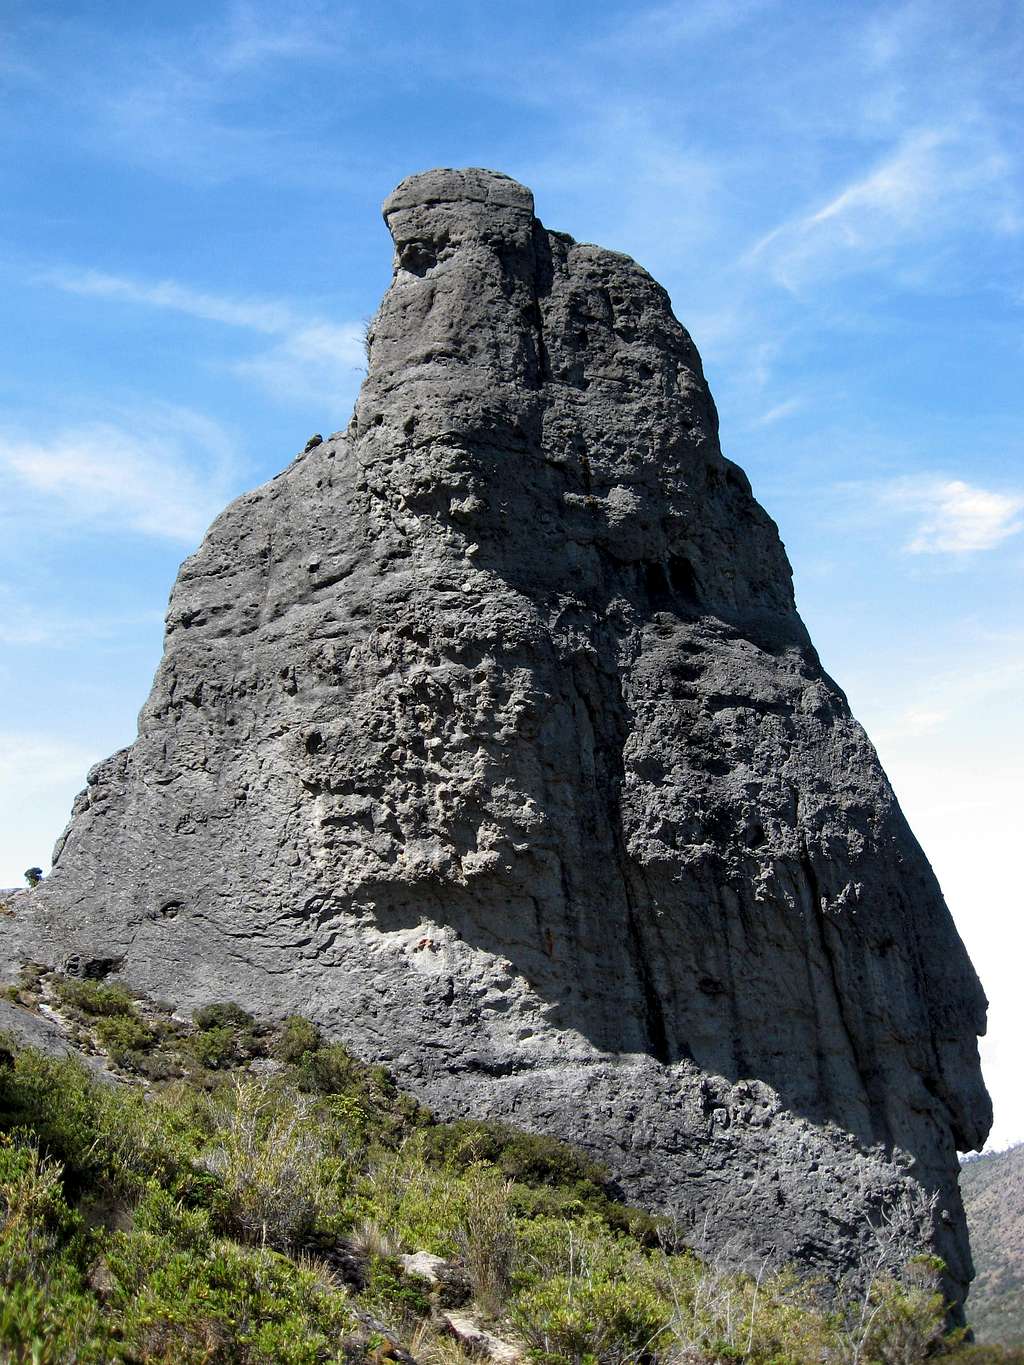 Cerro Crestones